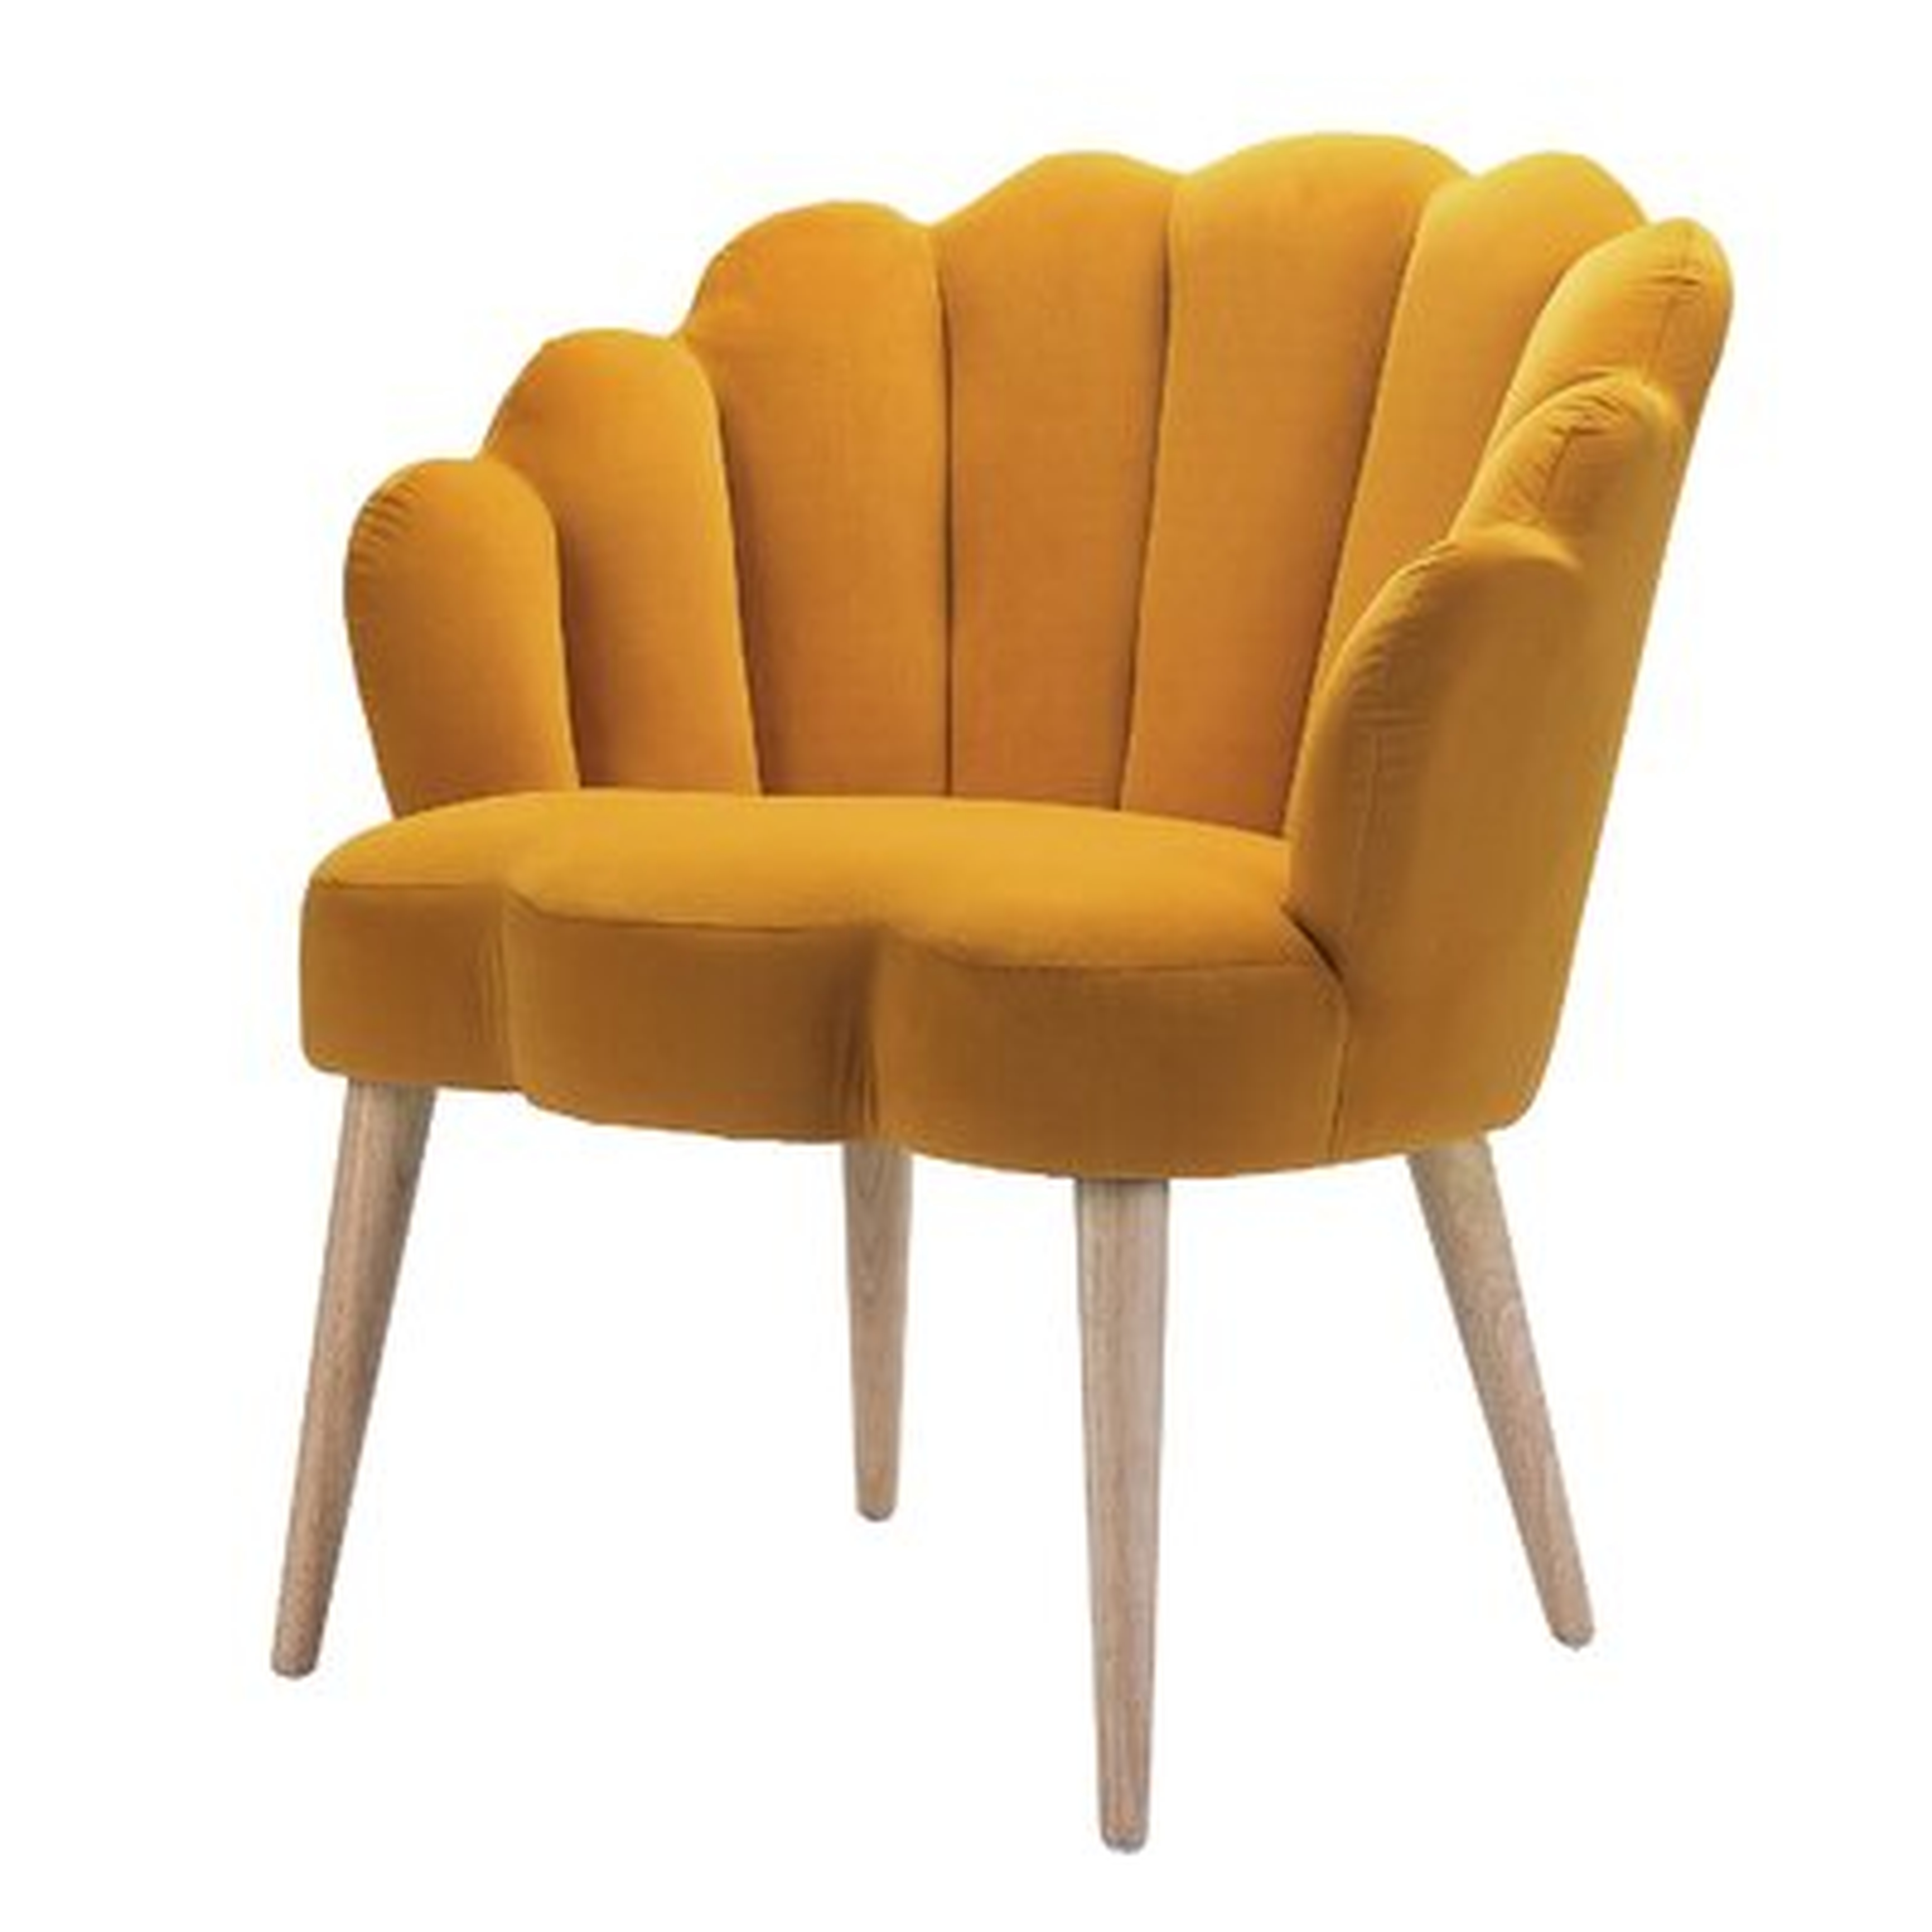 Helder Arm Chair - Wayfair